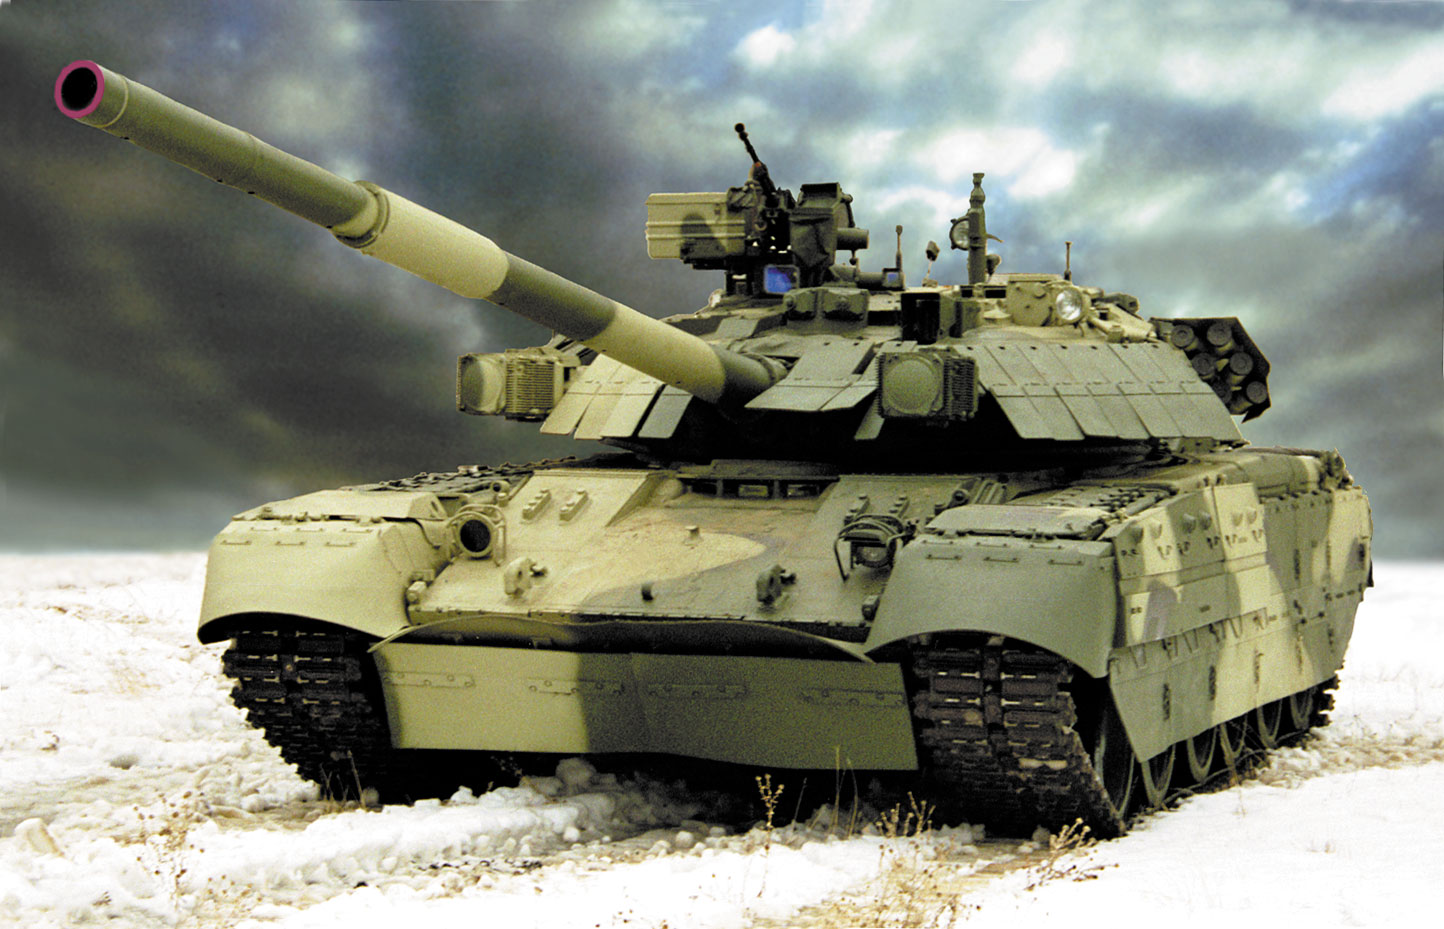 Войск Таиланда изучало несколько других танков в числе предложений